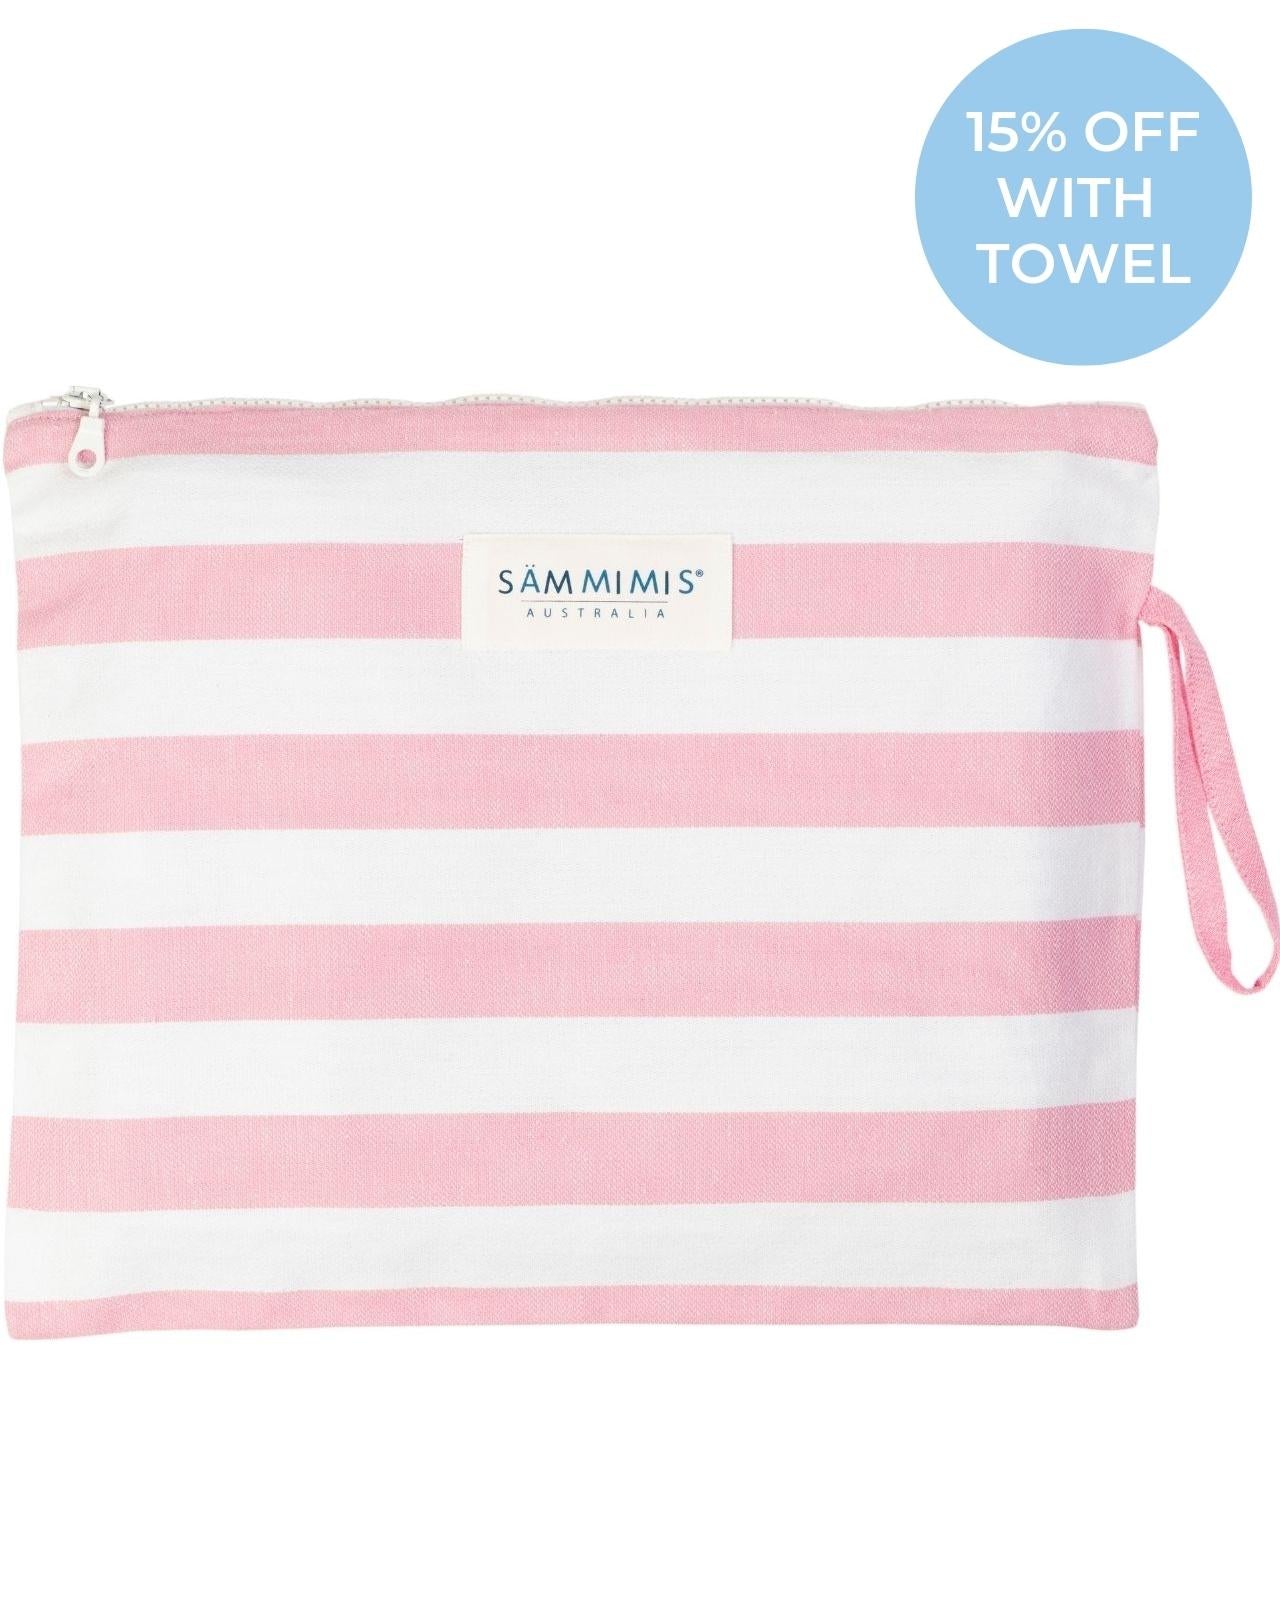 POROS Maxi Wet Bag: Pink/White